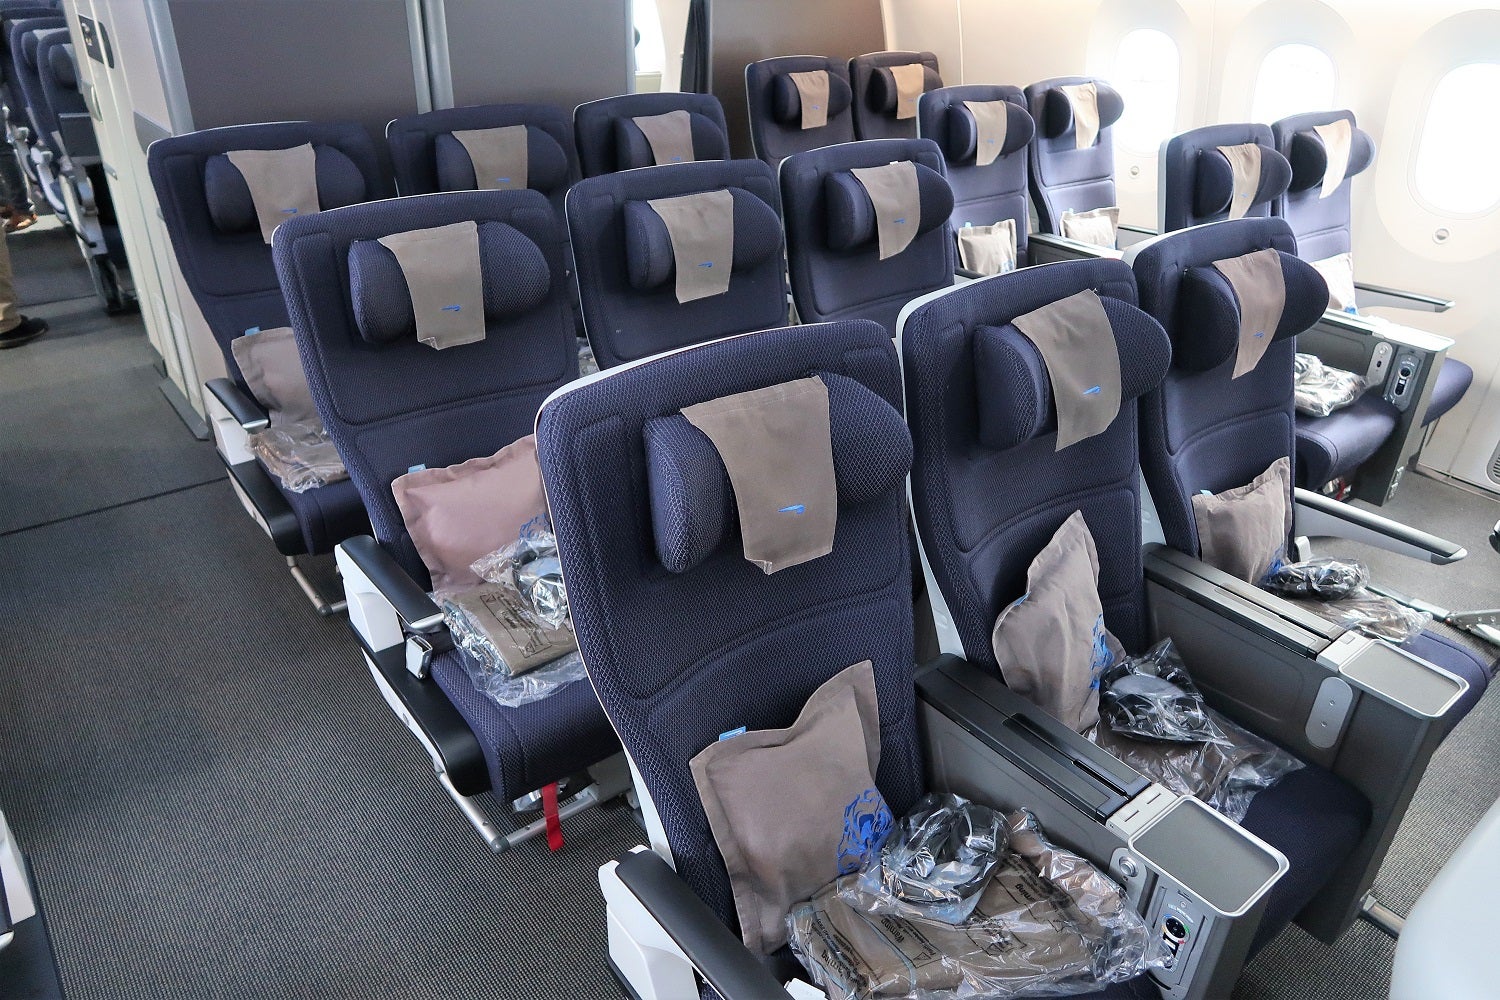 British Airways PE World Traveller Plus - 787-9 cabin